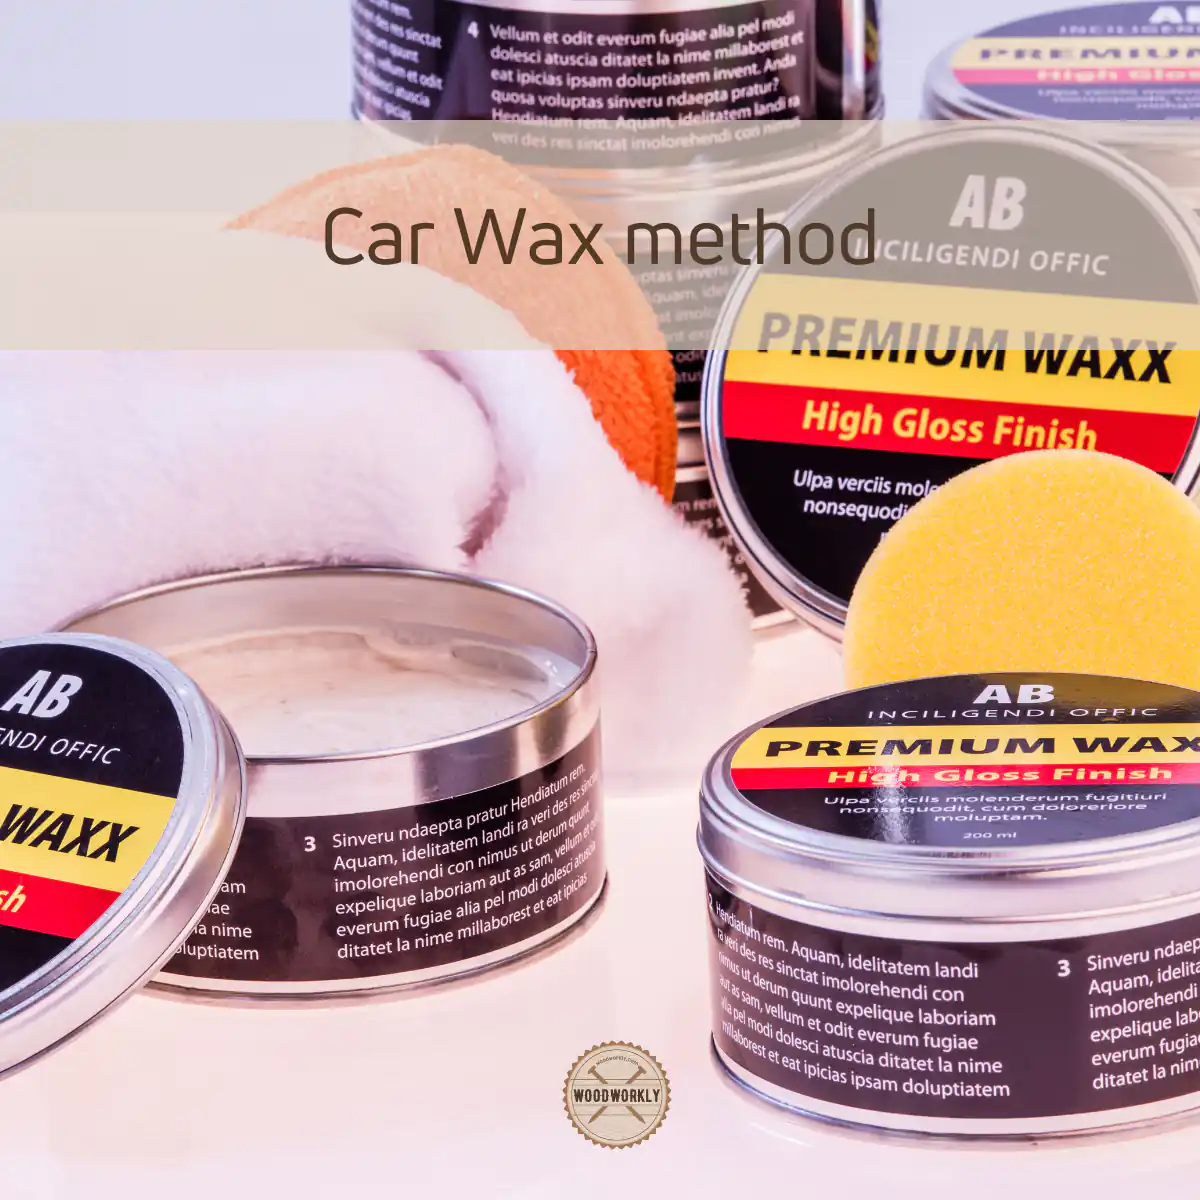 Car Wax method